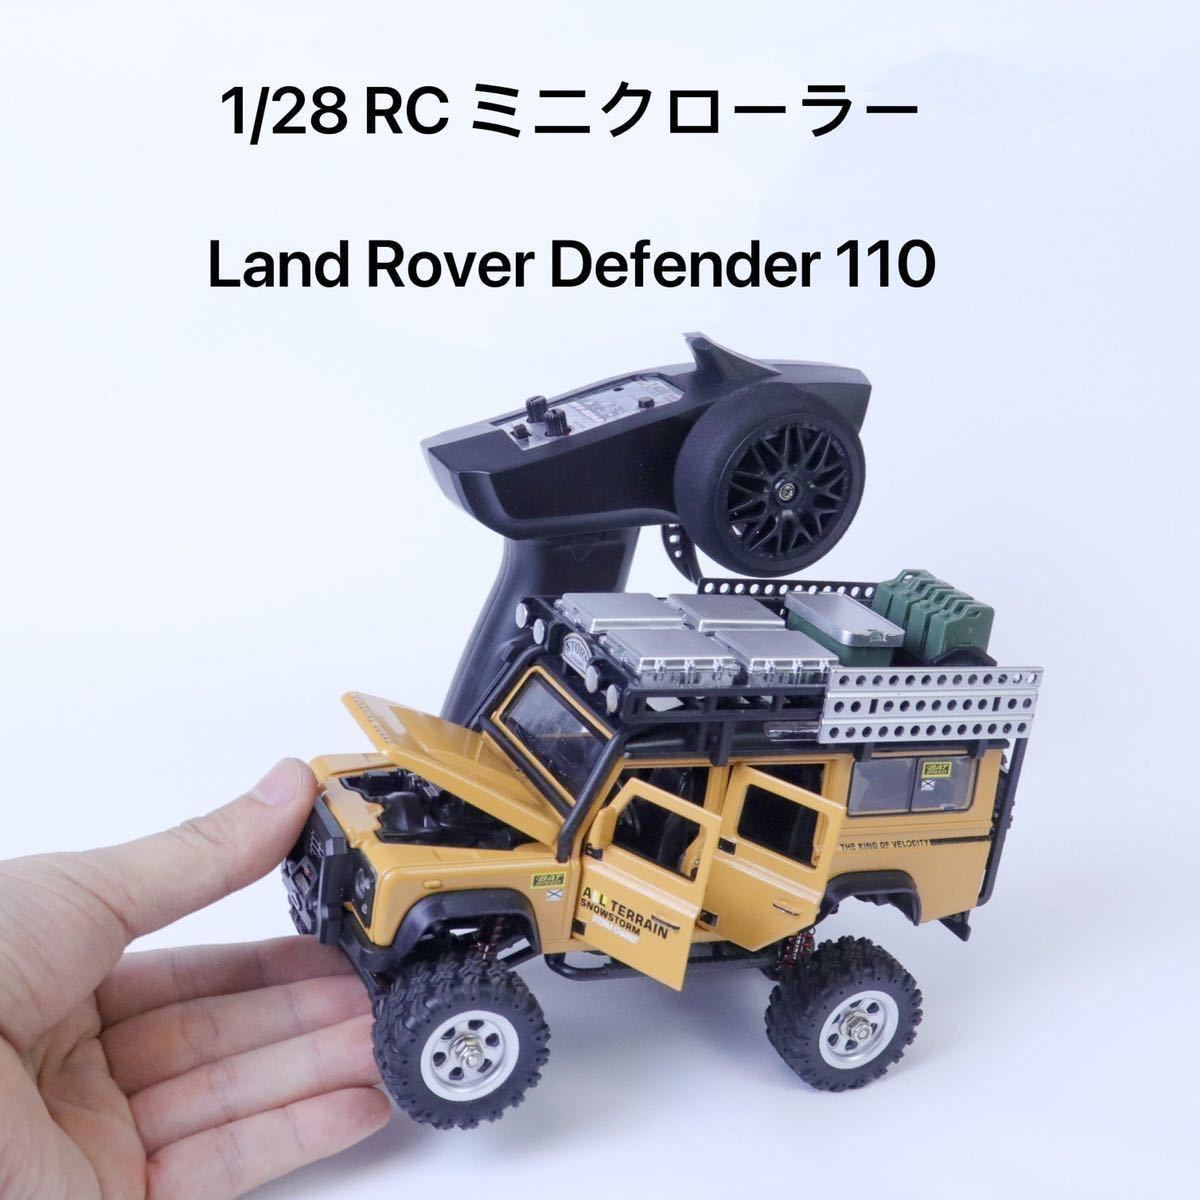 1/28 SG 2801 サーボ RC クローラー Land Rover Defender 110 ランドローバー ラジコン 修理パーツ 専用ステアリングサーボキット